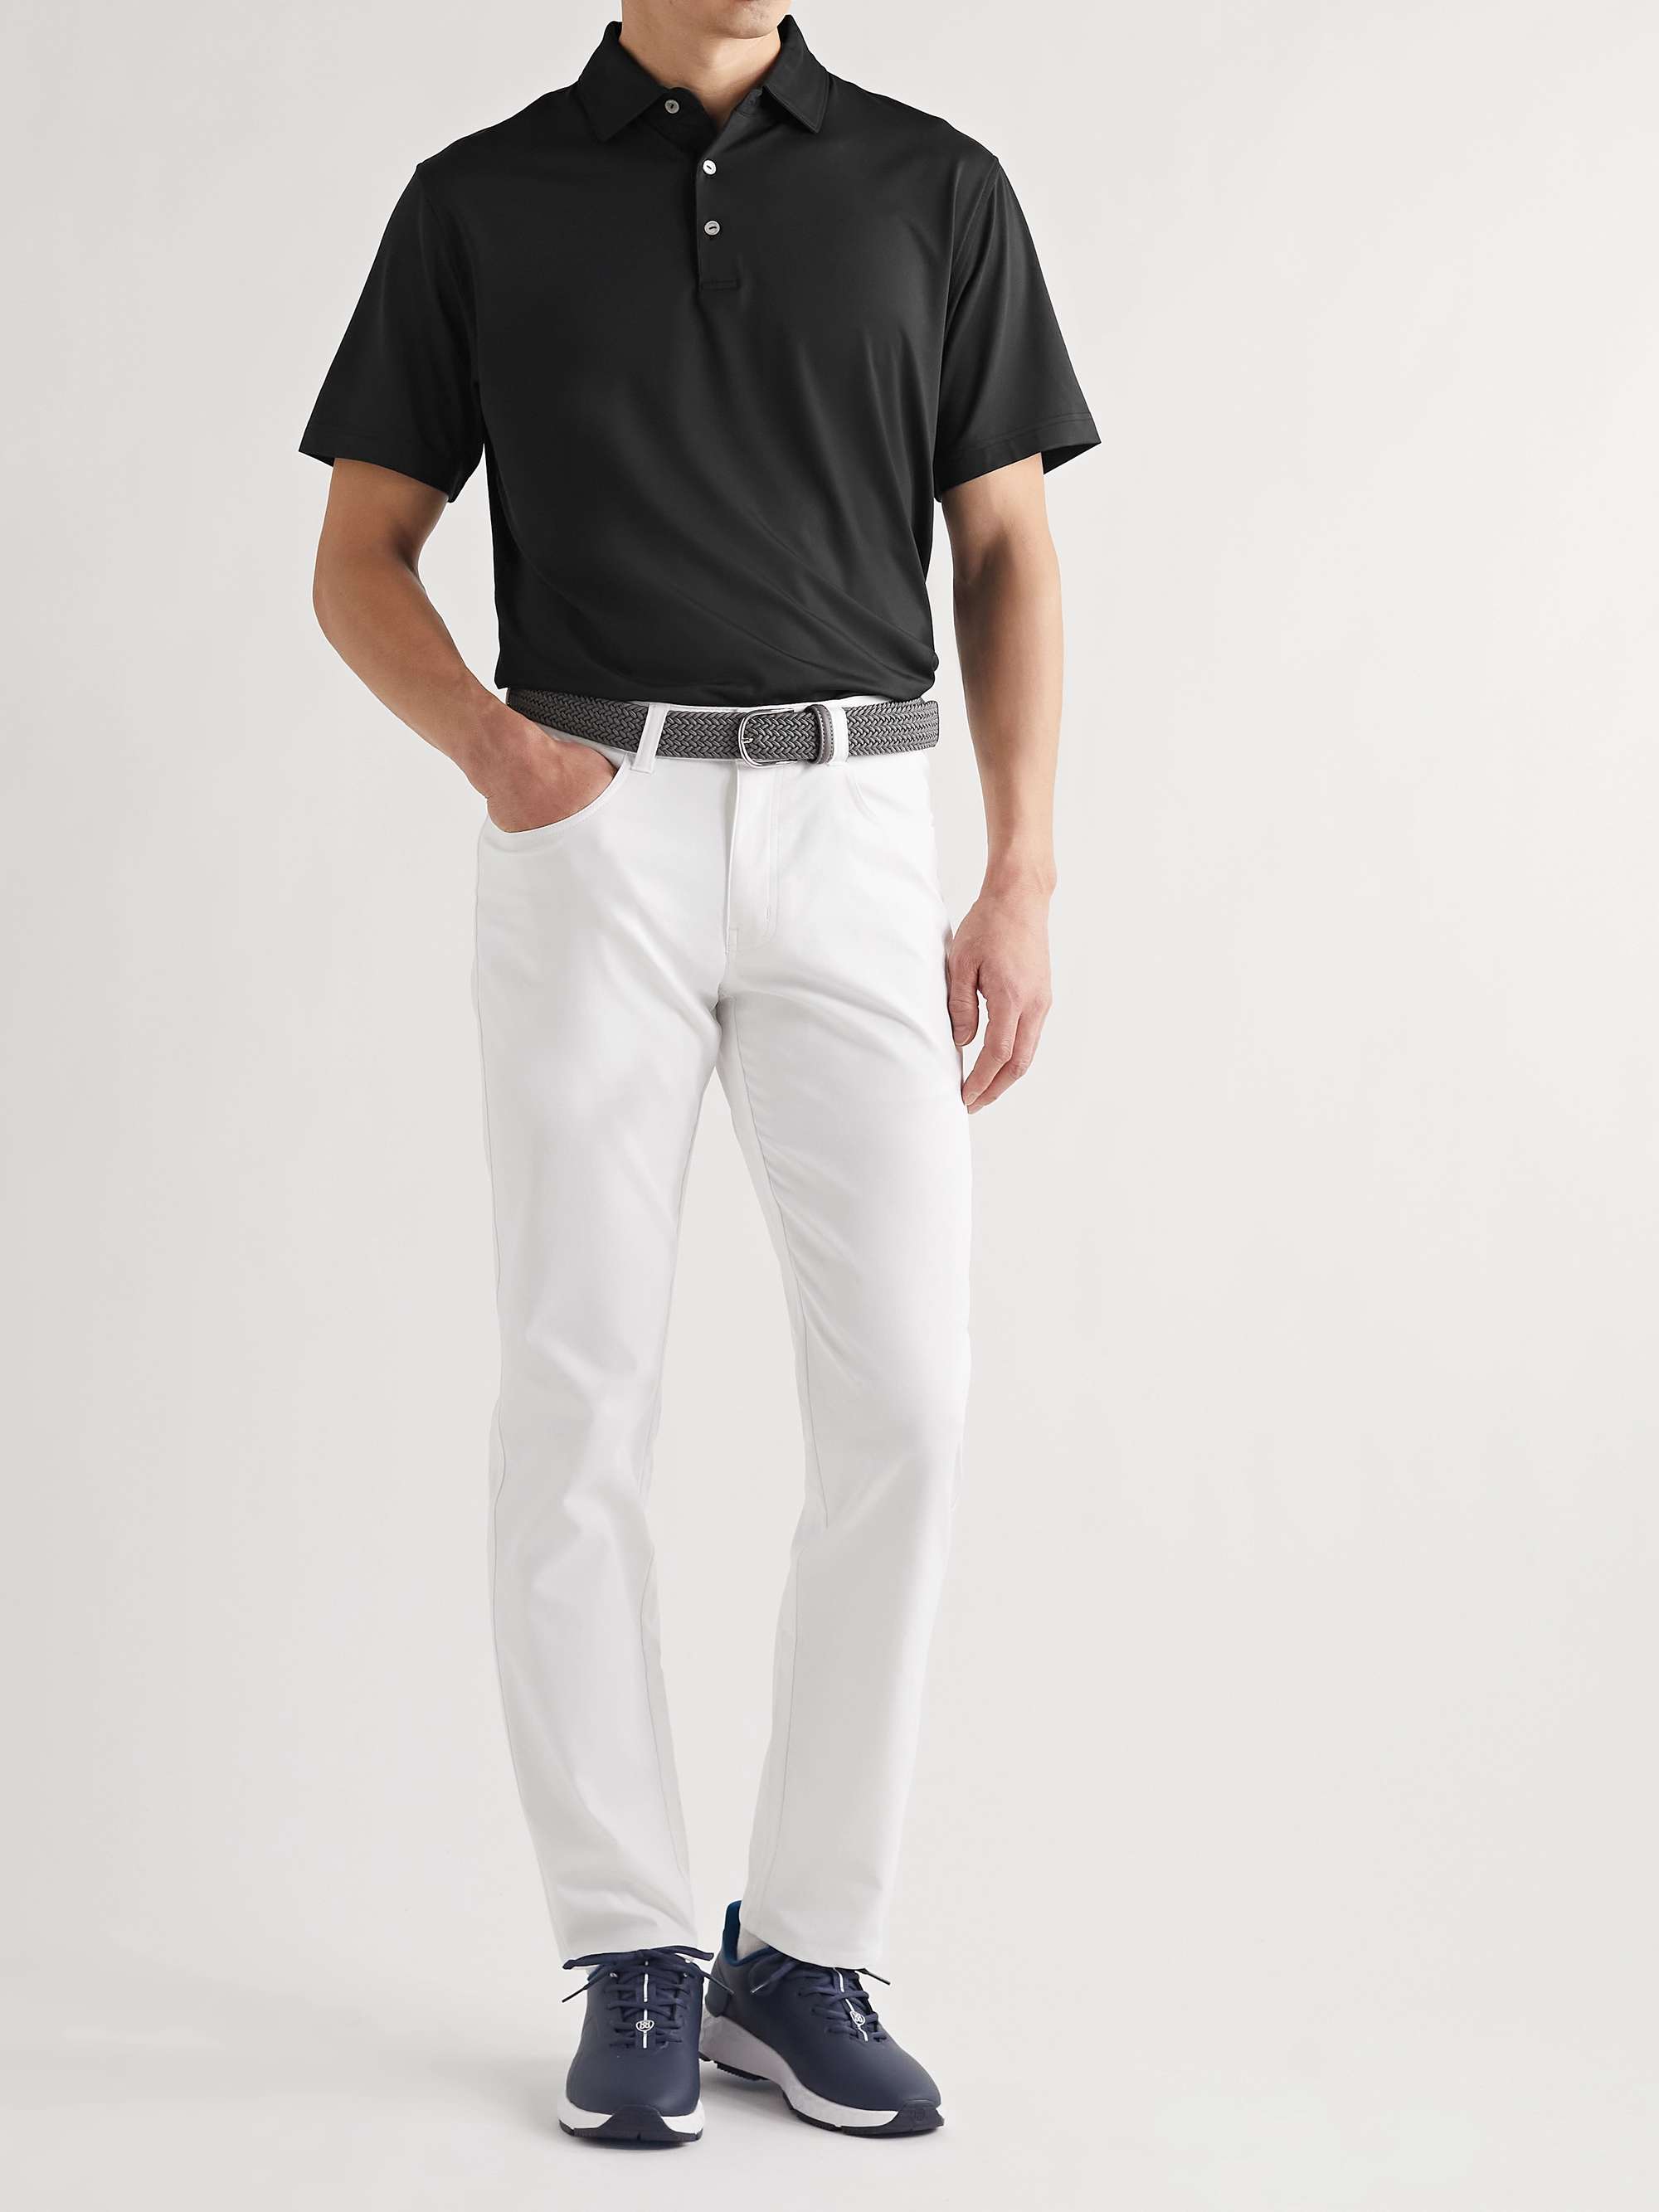 PETER MILLAR Tech-Jersey Golf Polo Shirt